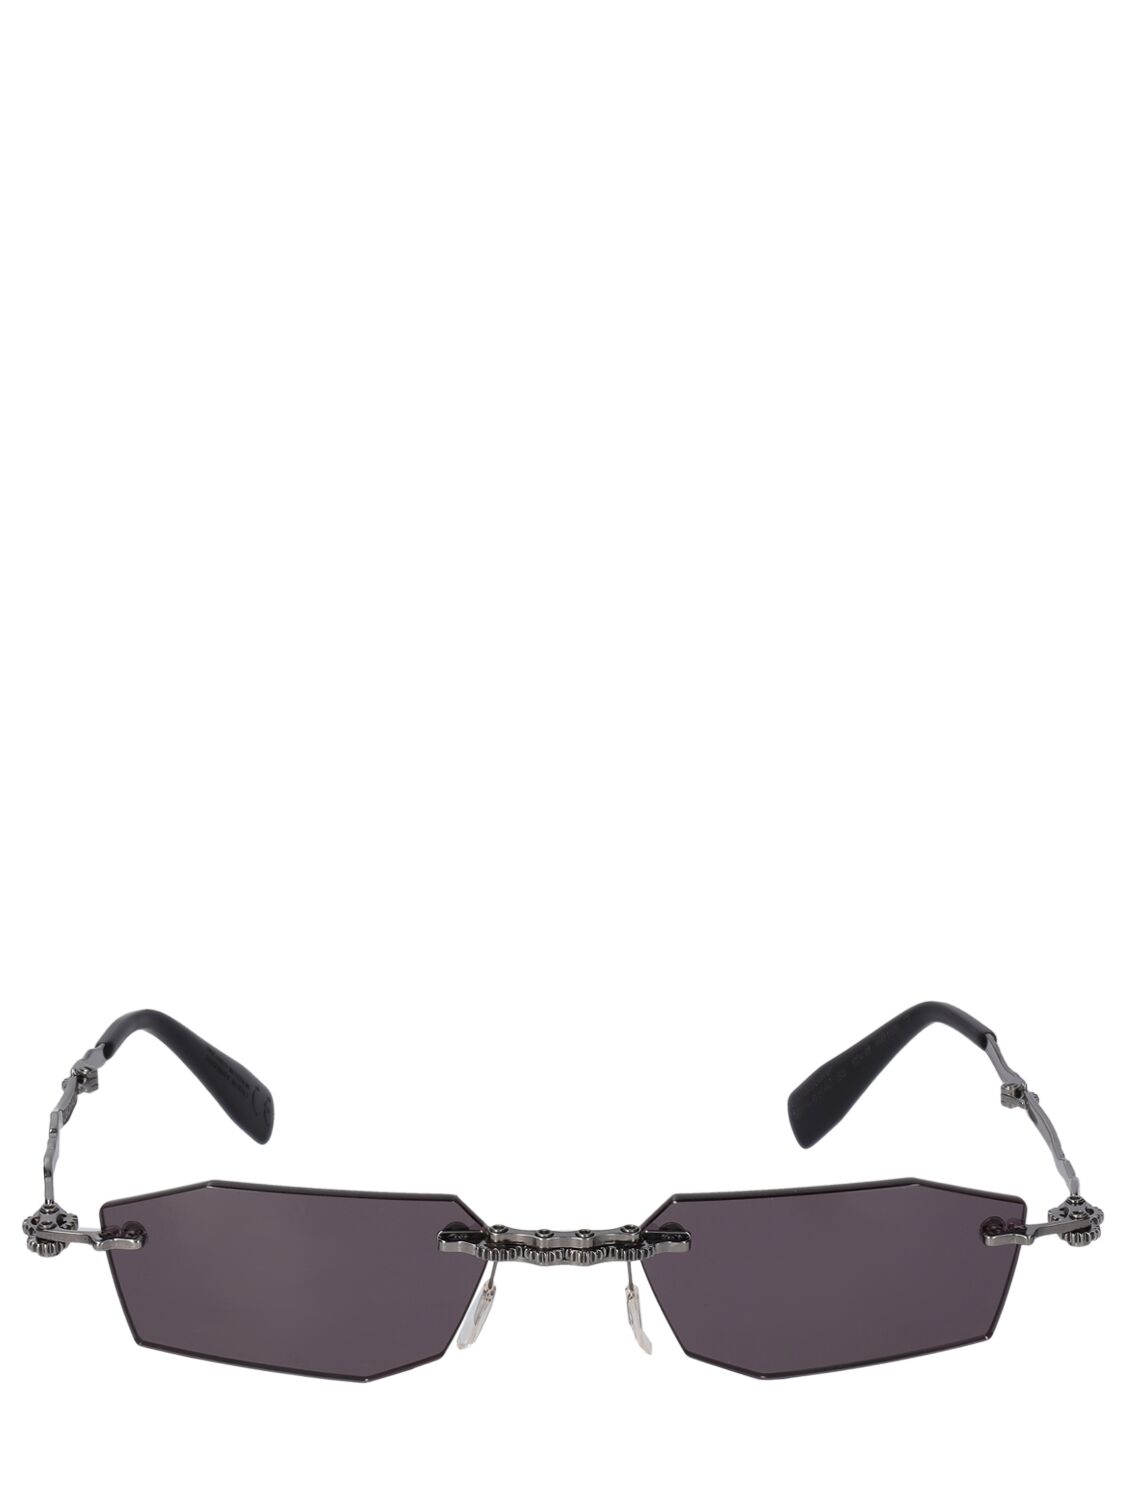 Kuboraum Berlin H40 Metal Machinery Rimless Sunglasses In Black,grey